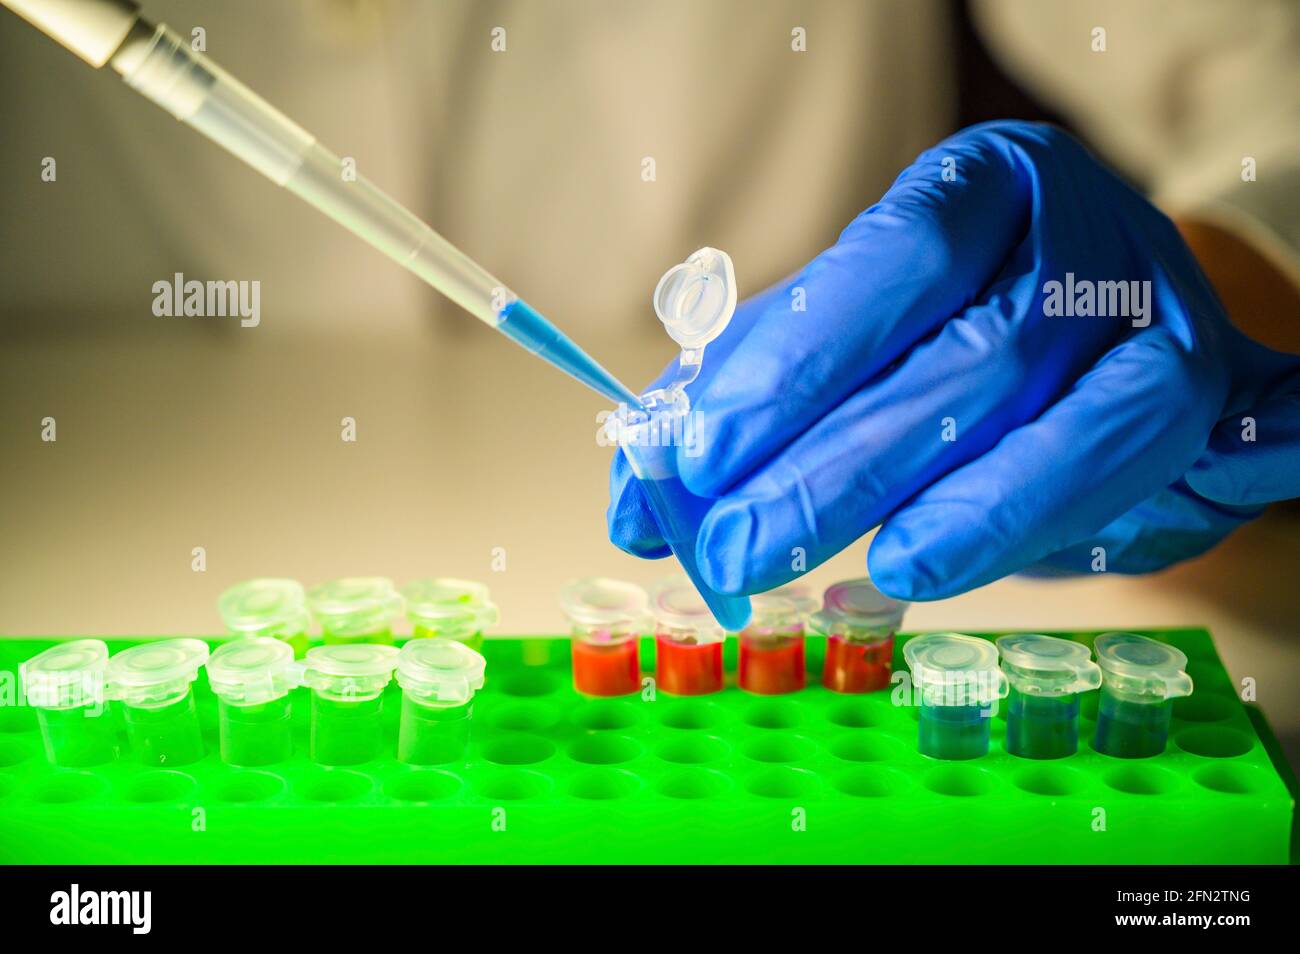 Scientifique professionnel de la santé travaillant avec des échantillons de patients du virus Corona dans un laboratoire de biologie moléculaire, porter des gants comme mesure de sécurité Banque D'Images